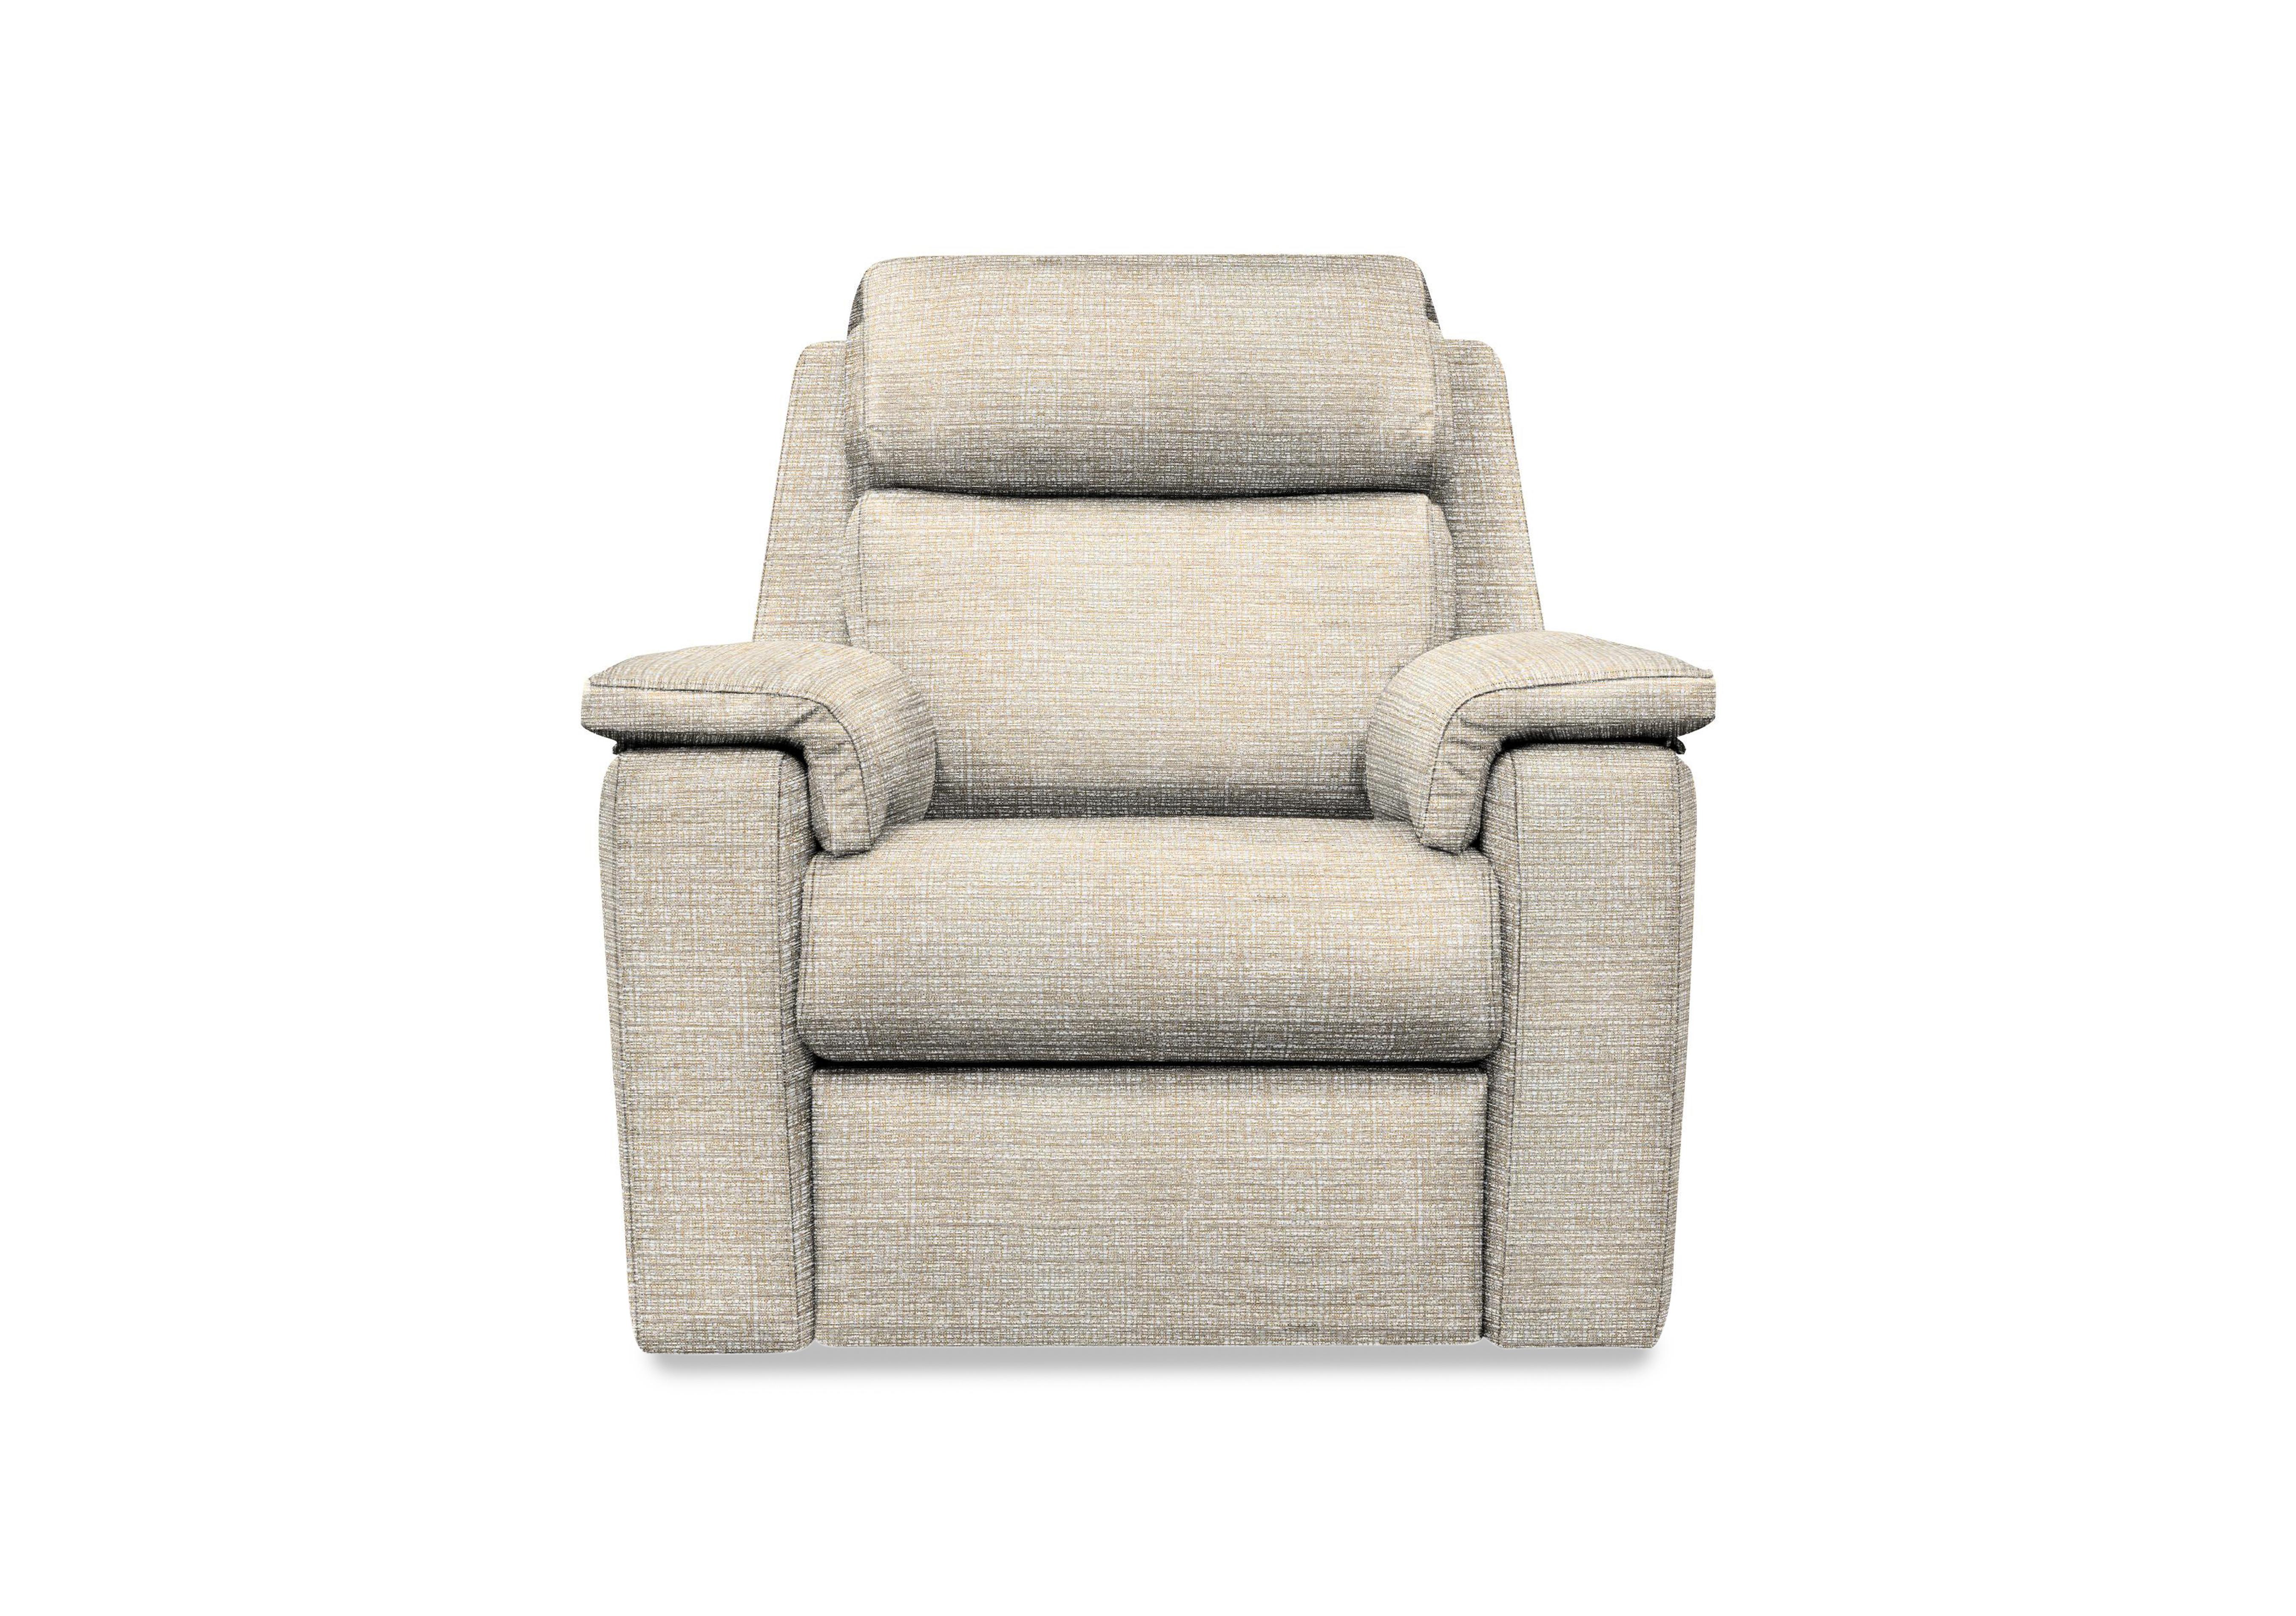 Thornbury Fabric Chair in A006 Yarn Shale on Furniture Village